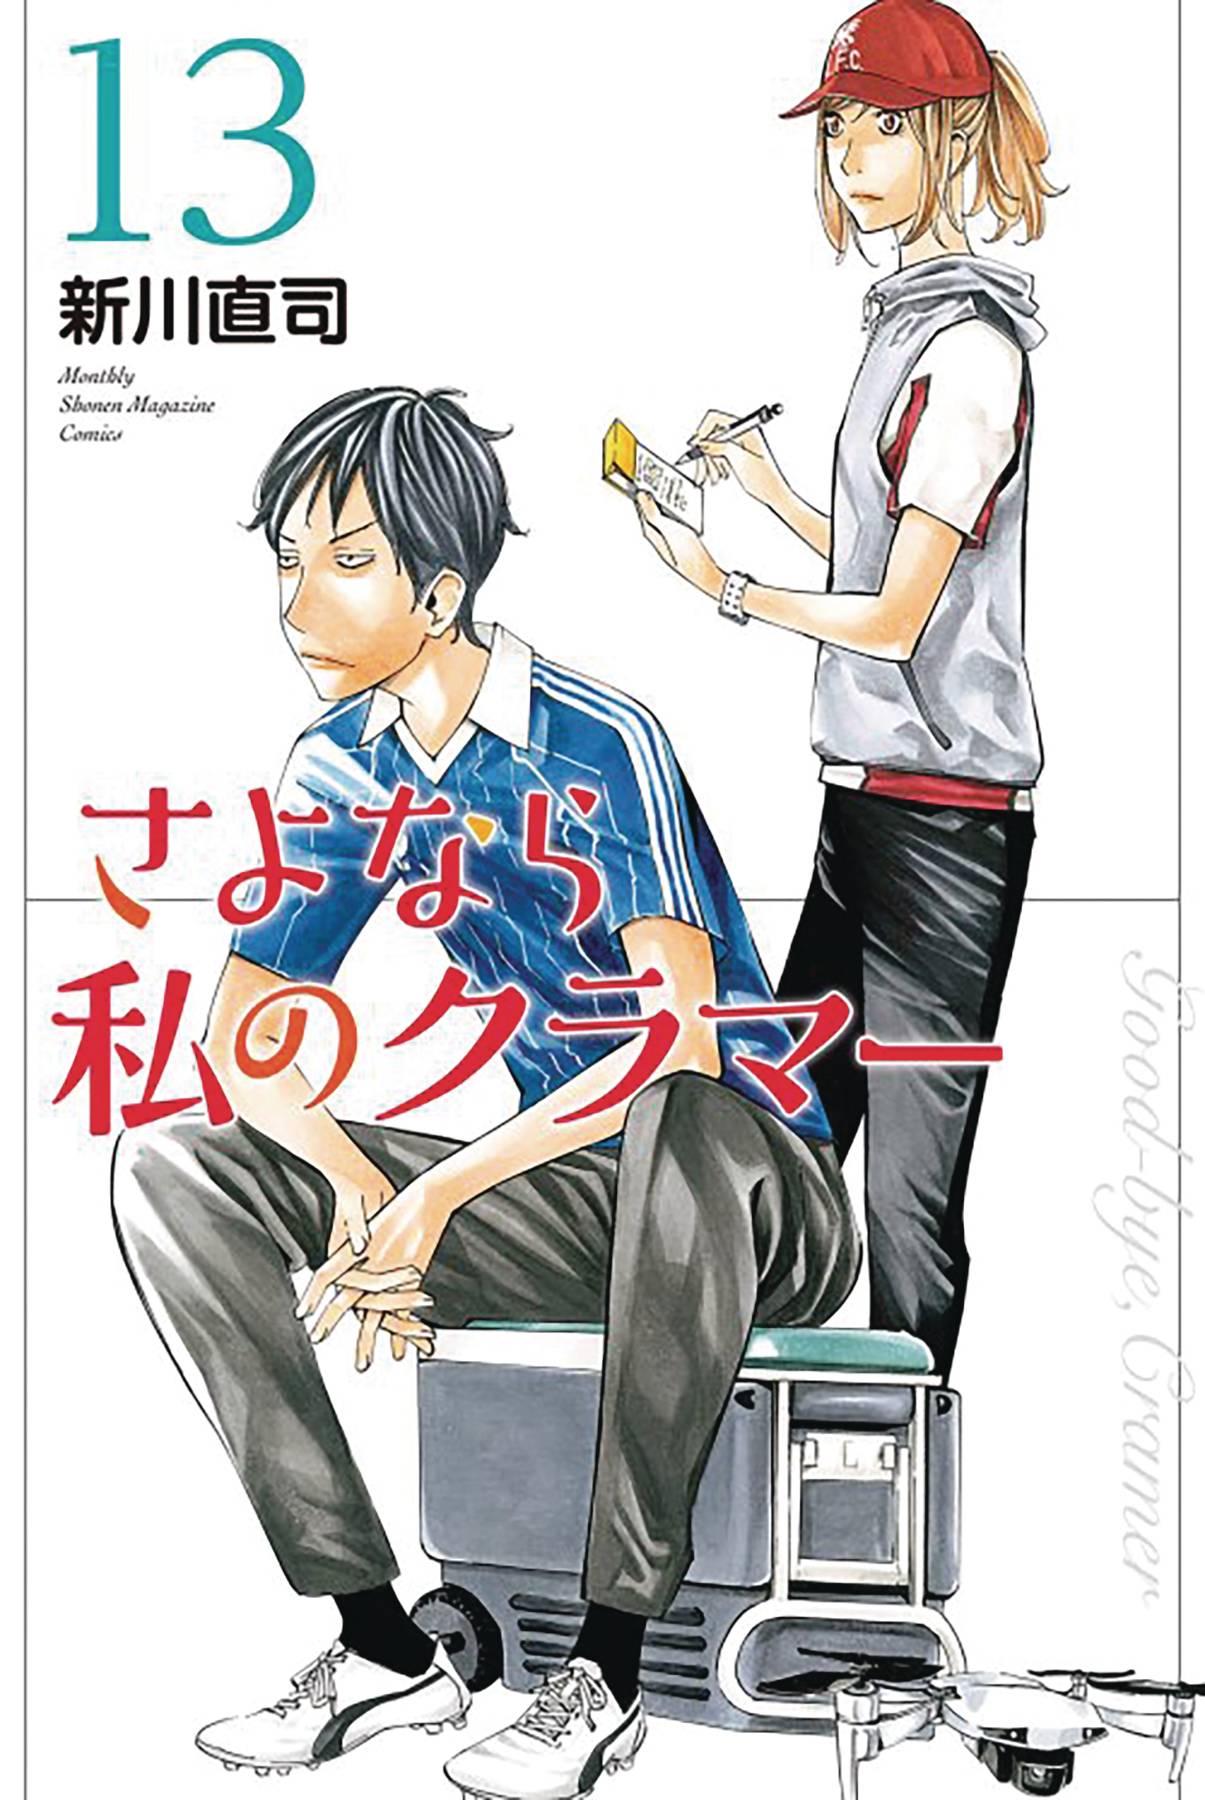 The One Stop Shop Comics & Games Sayonara Football Gn Vol 16 (C: 0-1-1) (3/29/2023) KODANSHA COMICS